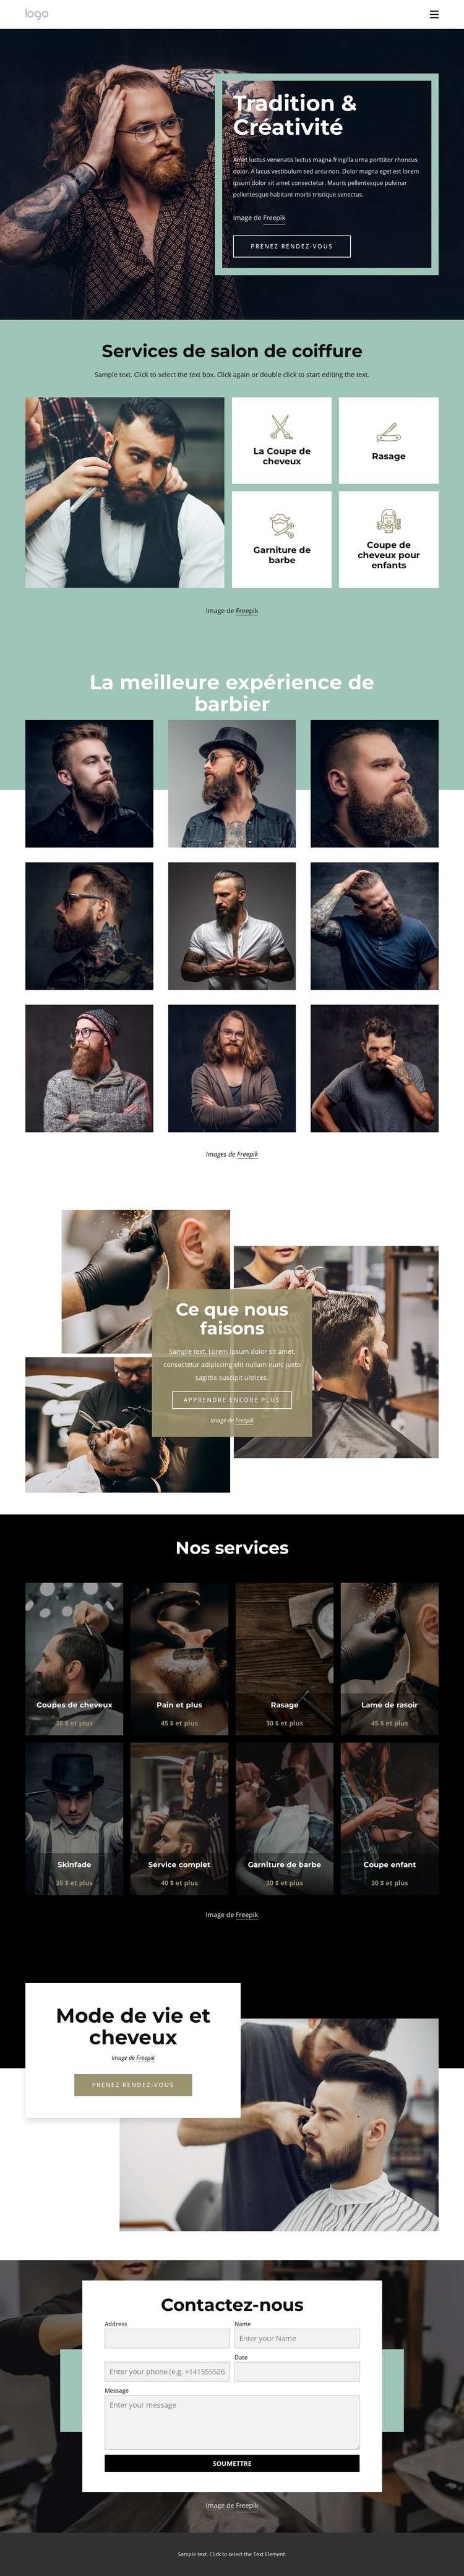 Salon de coiffure public Modèle d'une page